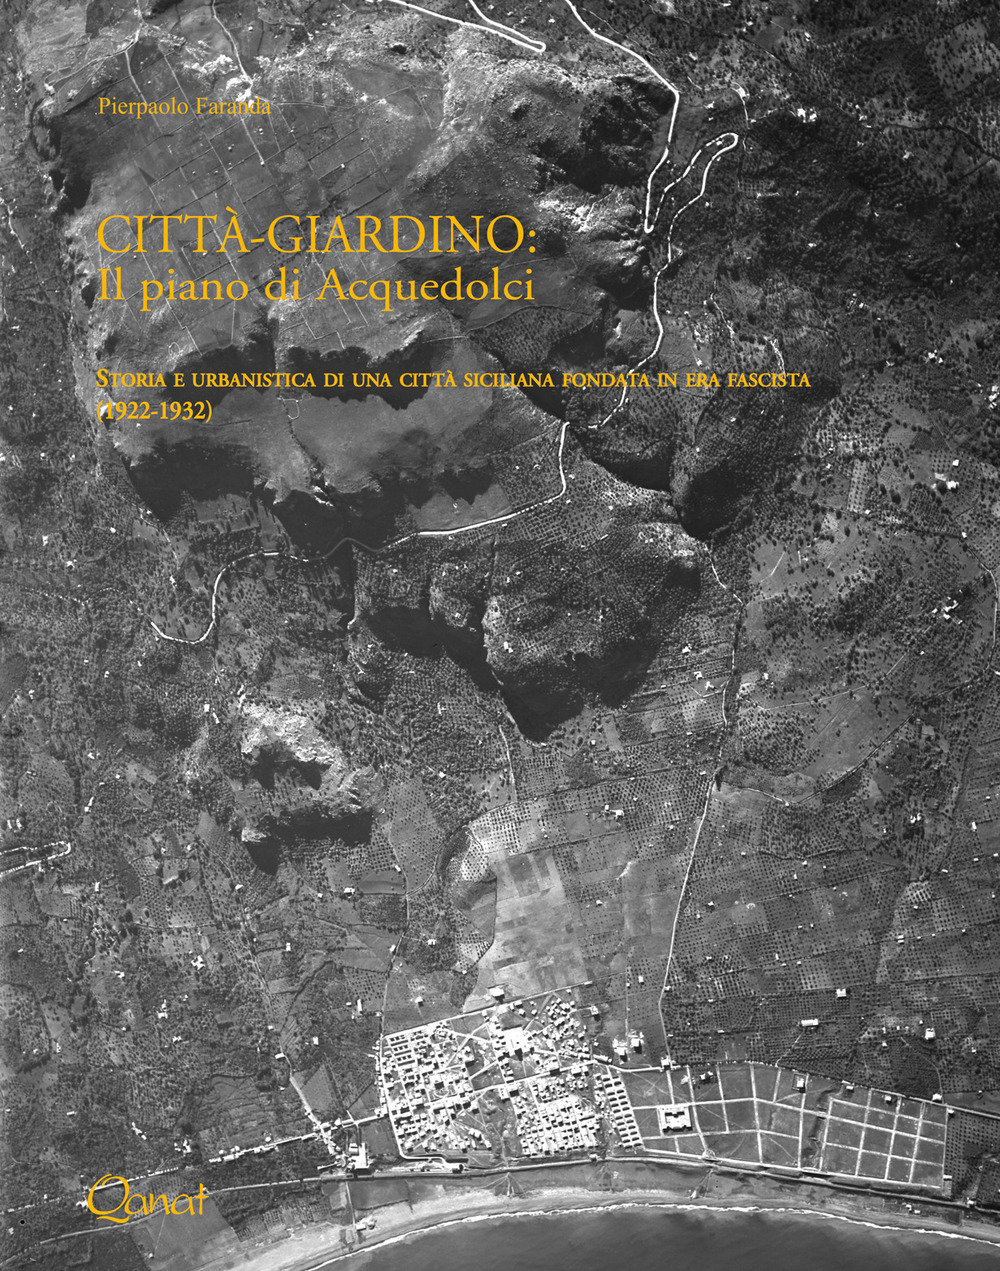 Città-giardino: il piano di Acquedolci. Storia e urbanistica di una città siciliana fondata in era fascista (1922-1932). Ediz. illustrata